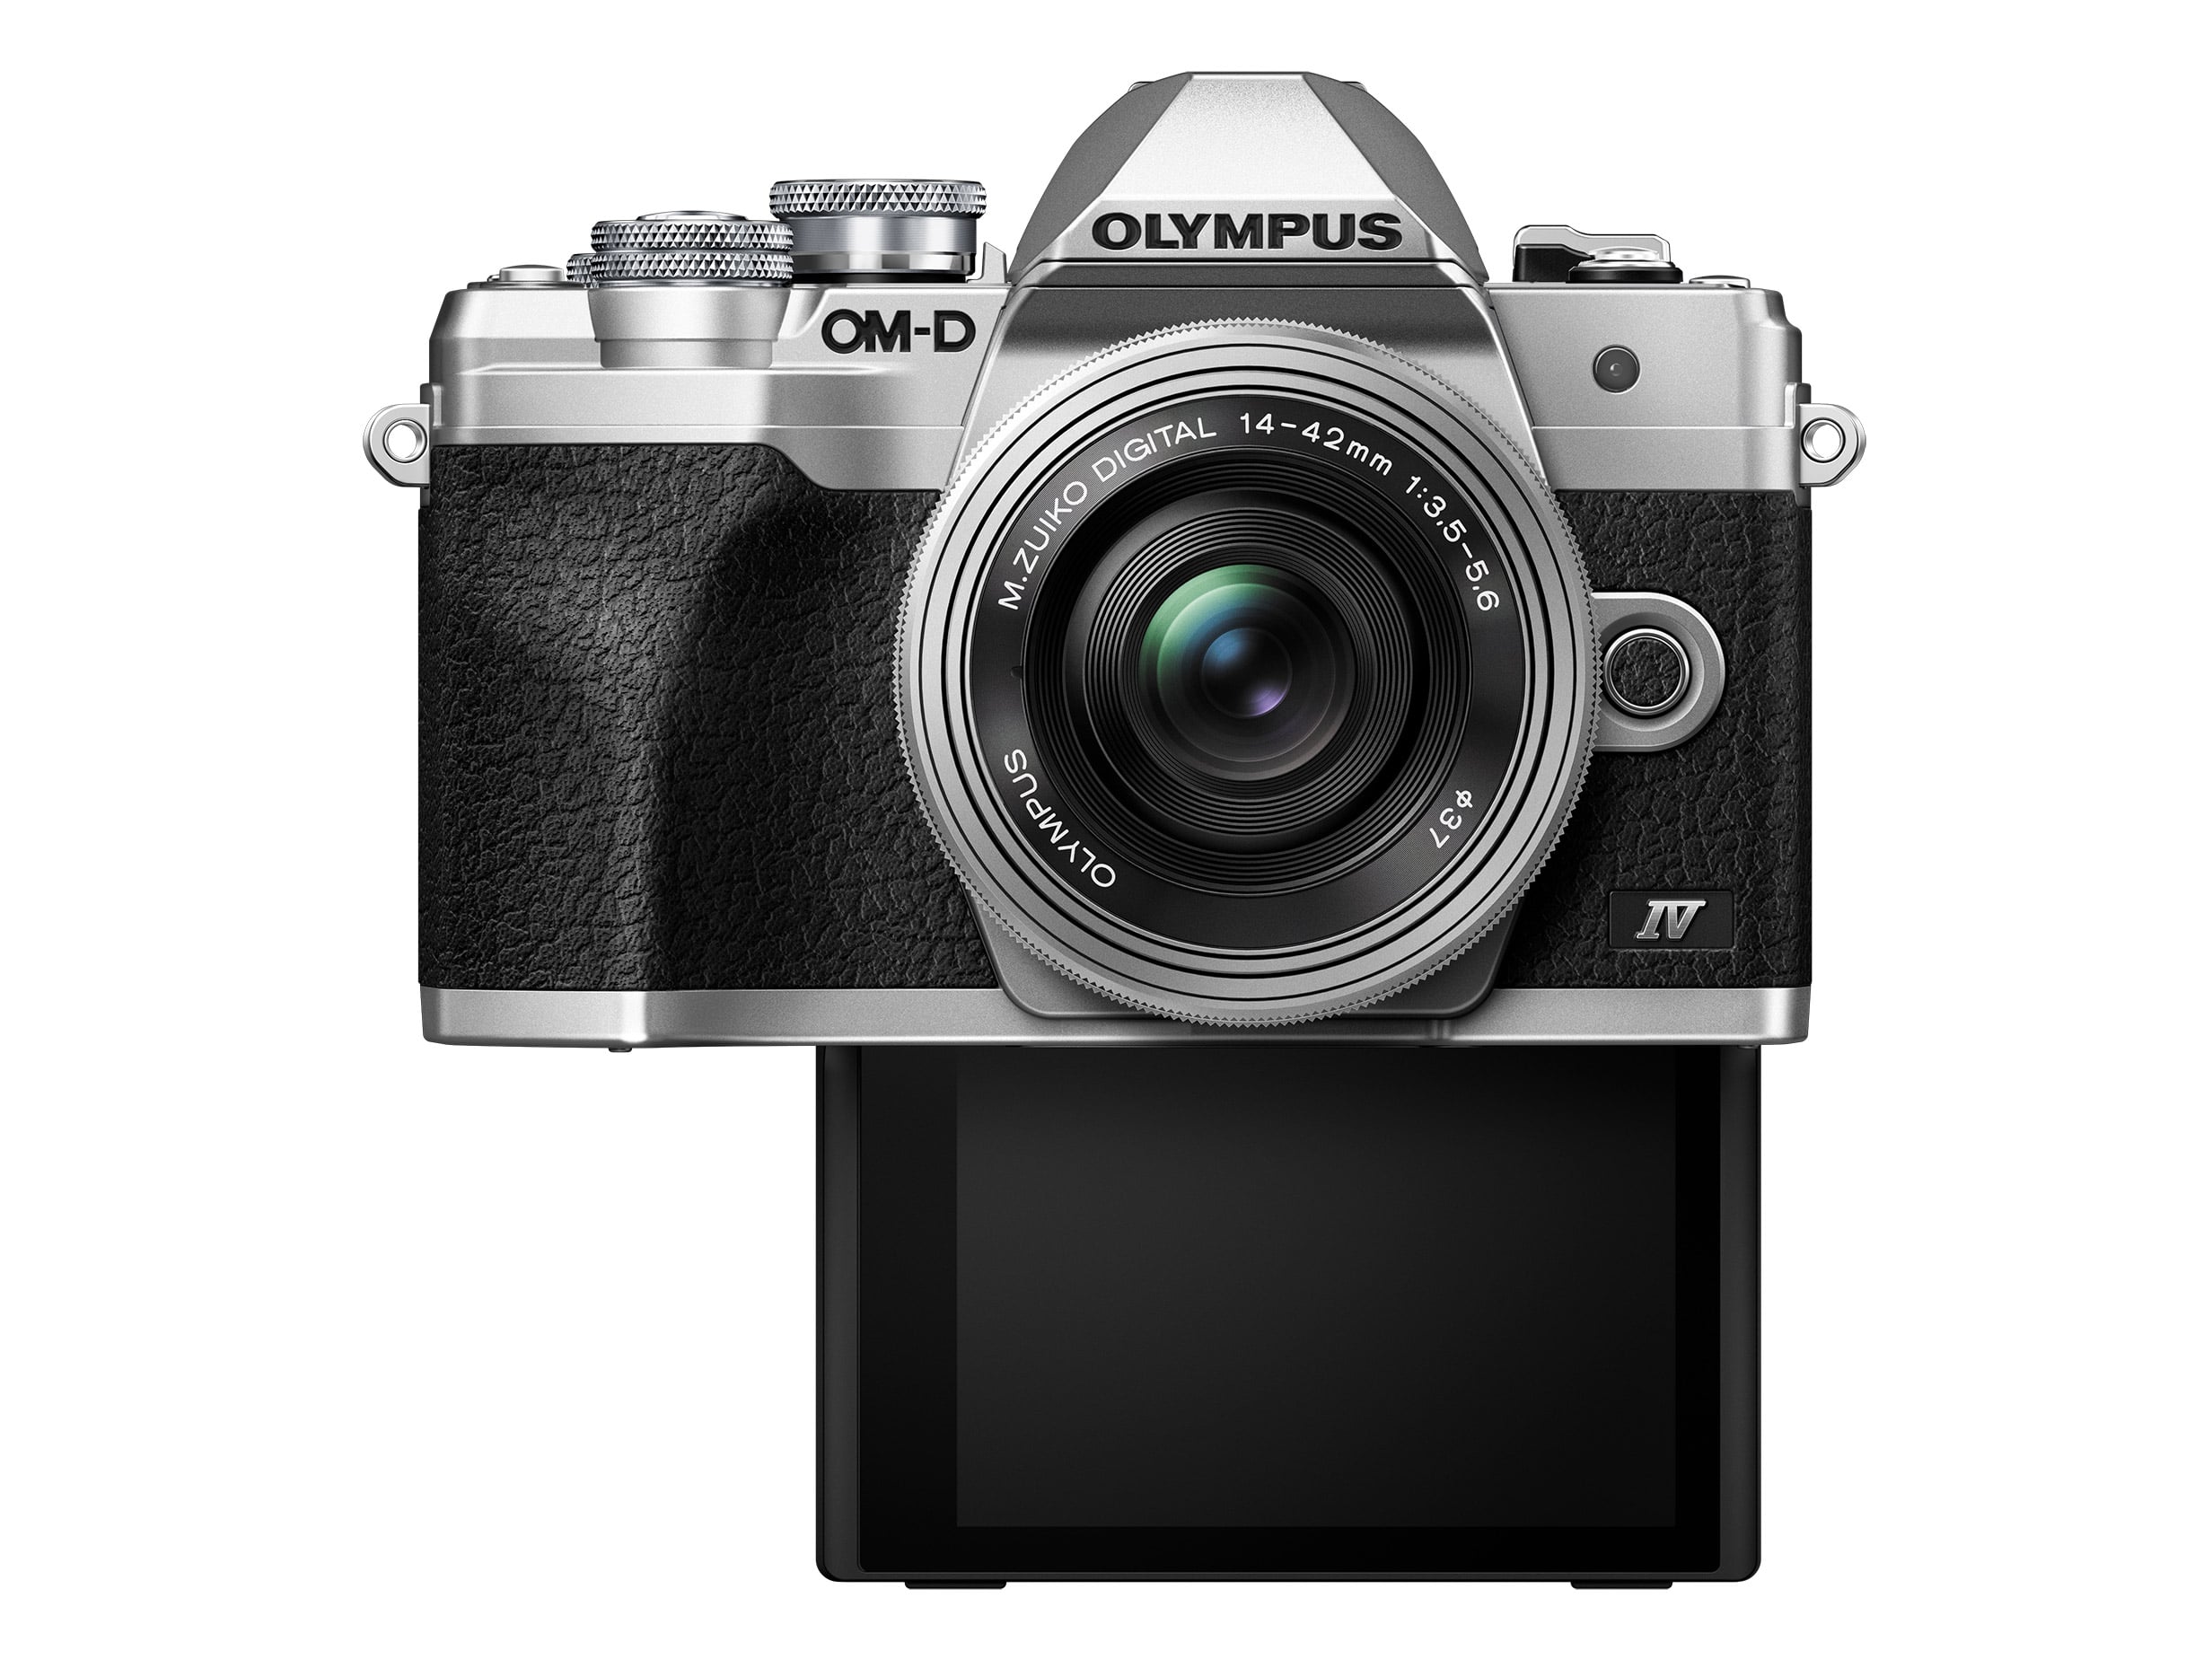 Olympus ra mắt máy ảnh E-M10 IV mới với cảm biến 20MP